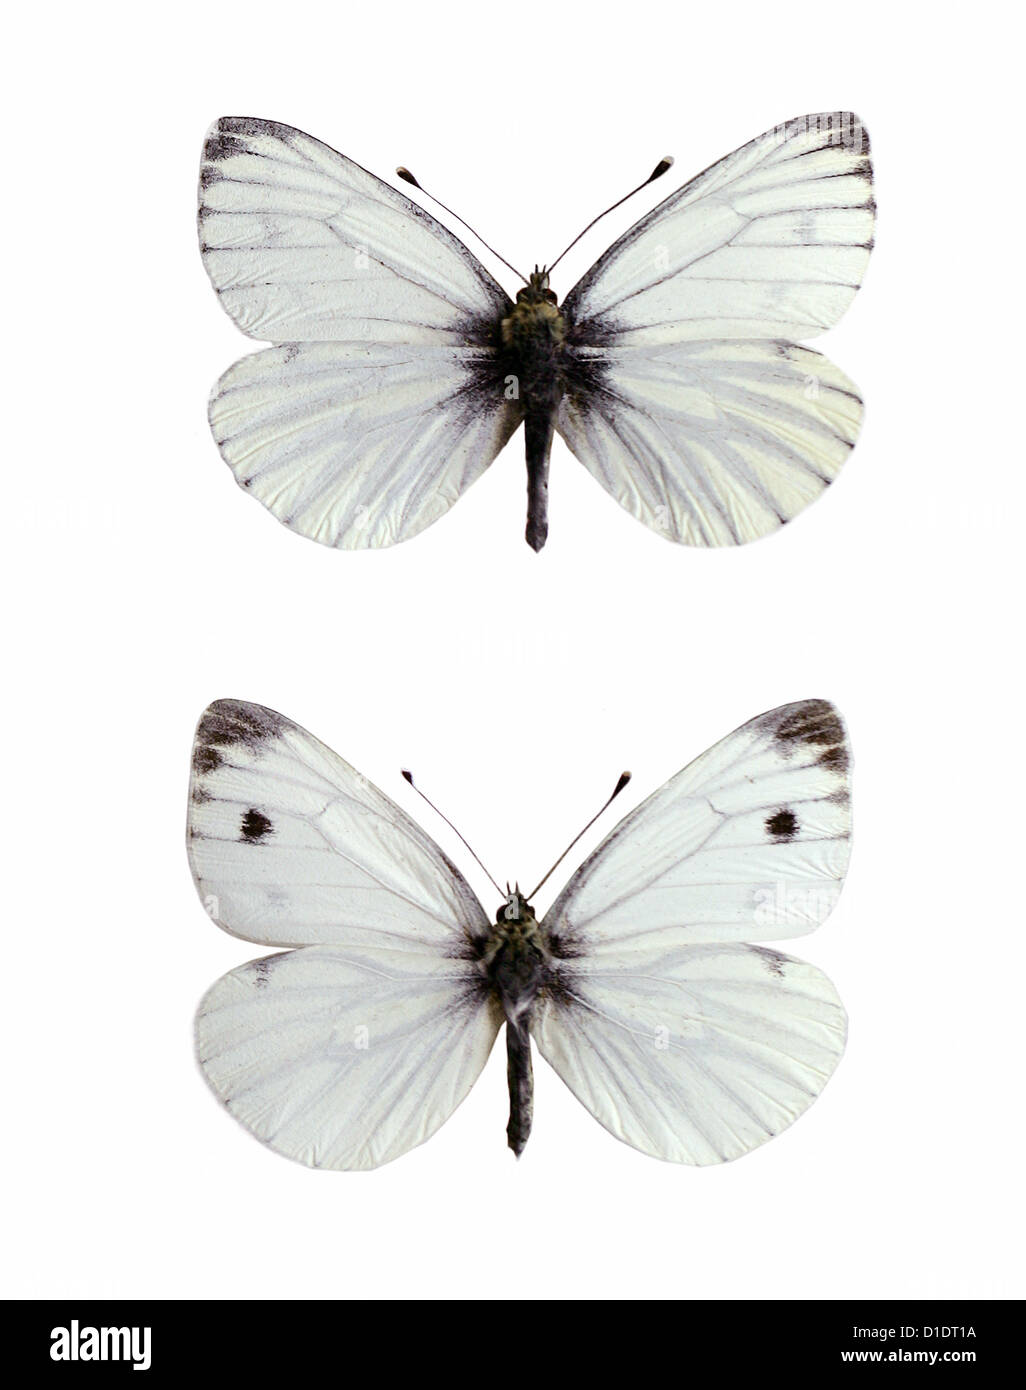 Verde-bianco venato farfalle, Sarcococca napi, Pieridae, Lepidotteri. Montate i campioni. Foto/intaglio. (Top) maschio, (fondo) femmina Foto Stock